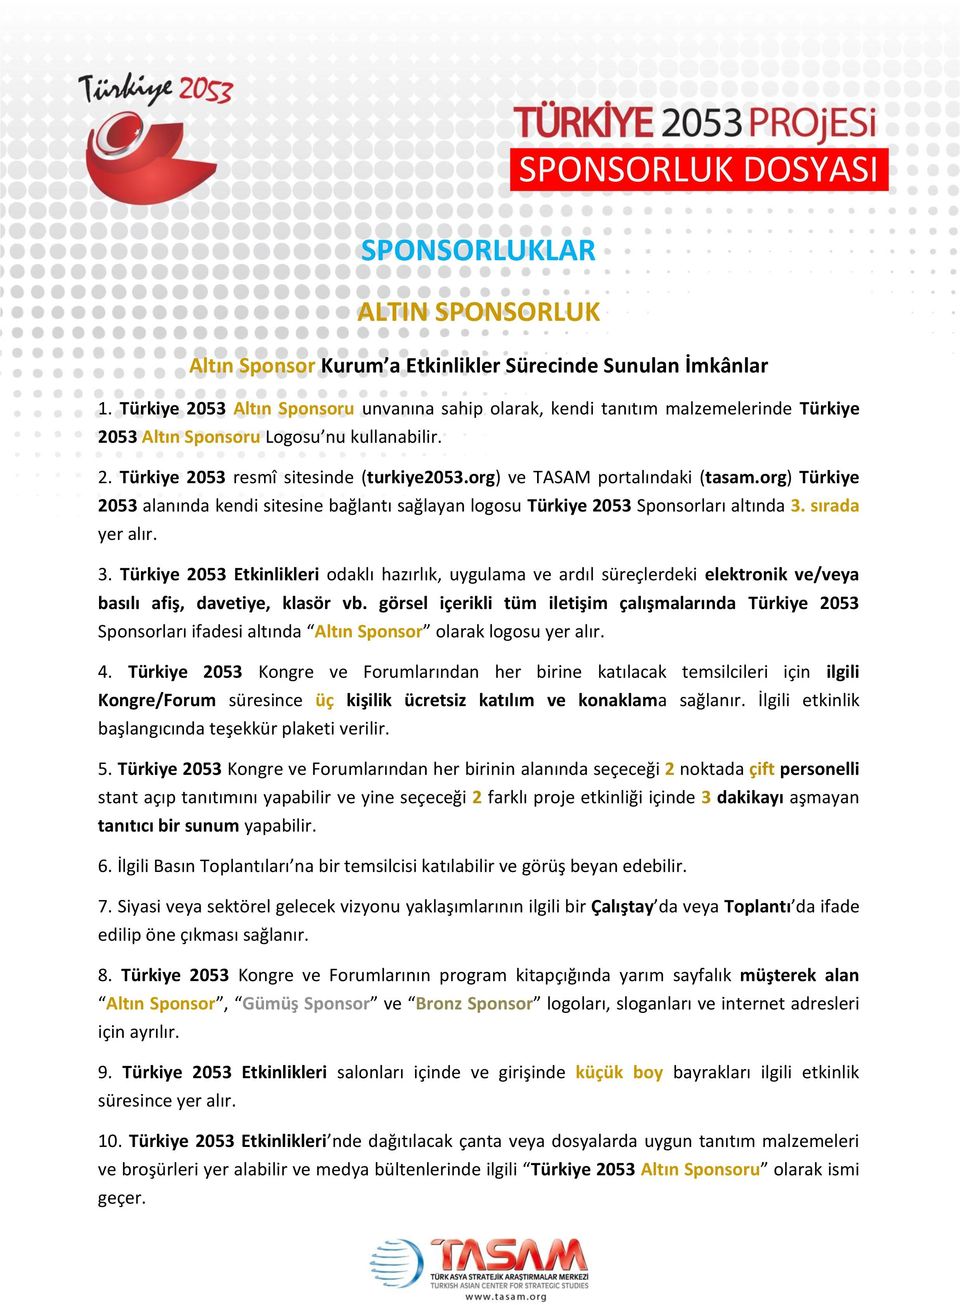 org) ve TASAM portalındaki (tasam.org) Türkiye 2053 alanında kendi sitesine bağlantı sağlayan logosu Türkiye 2053 Sponsorları altında 3. sırada 3.